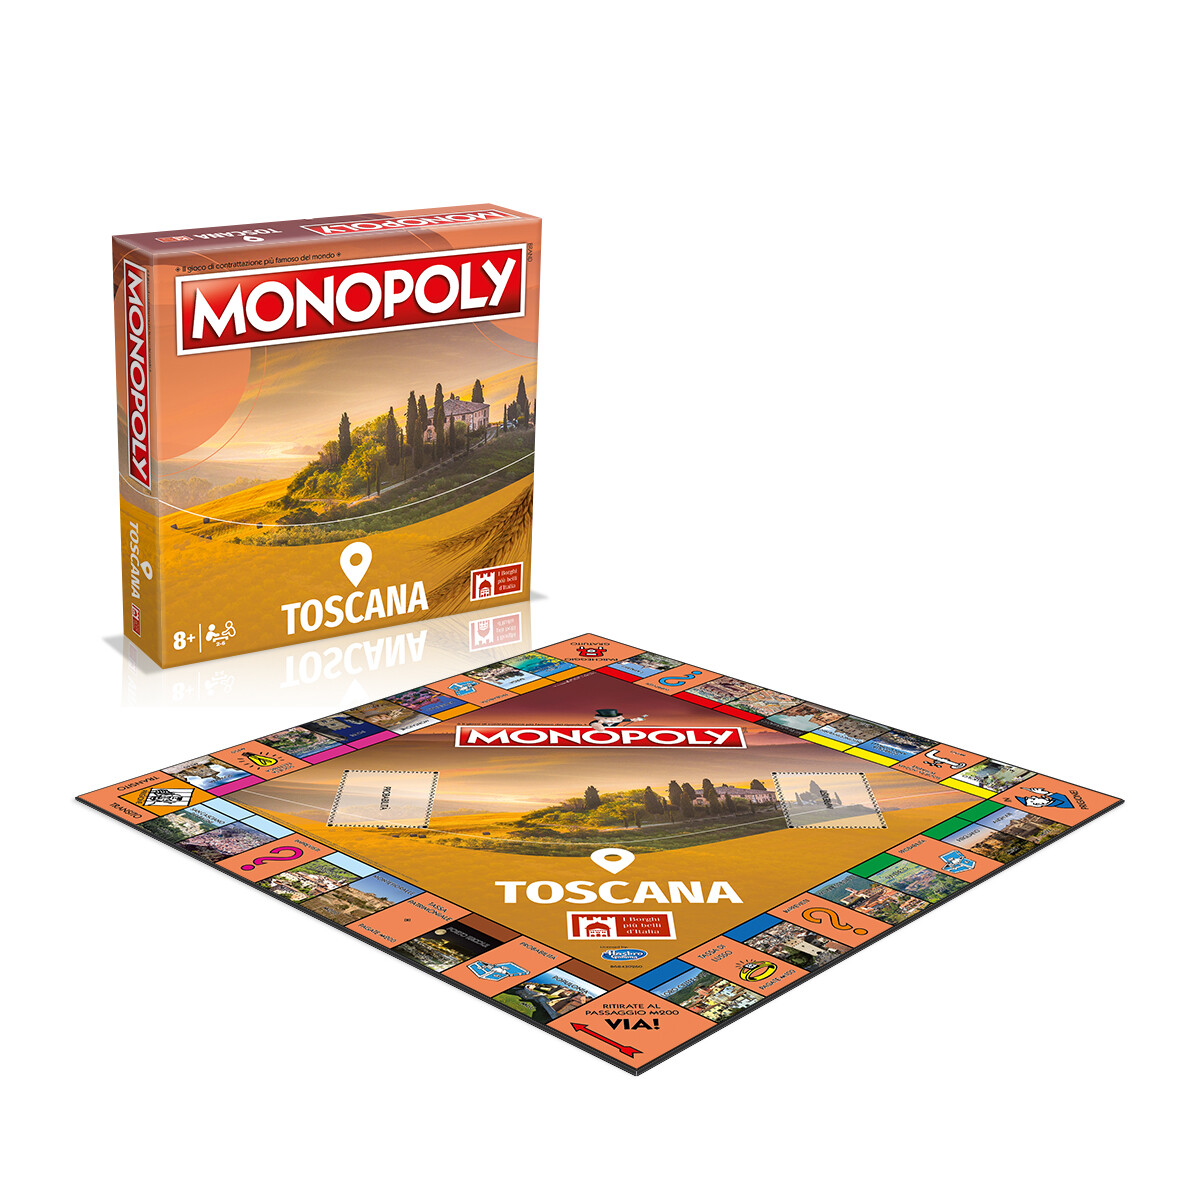 Monopoly - i borghi più belli d'itallia - edizione toscana - MONOPOLY